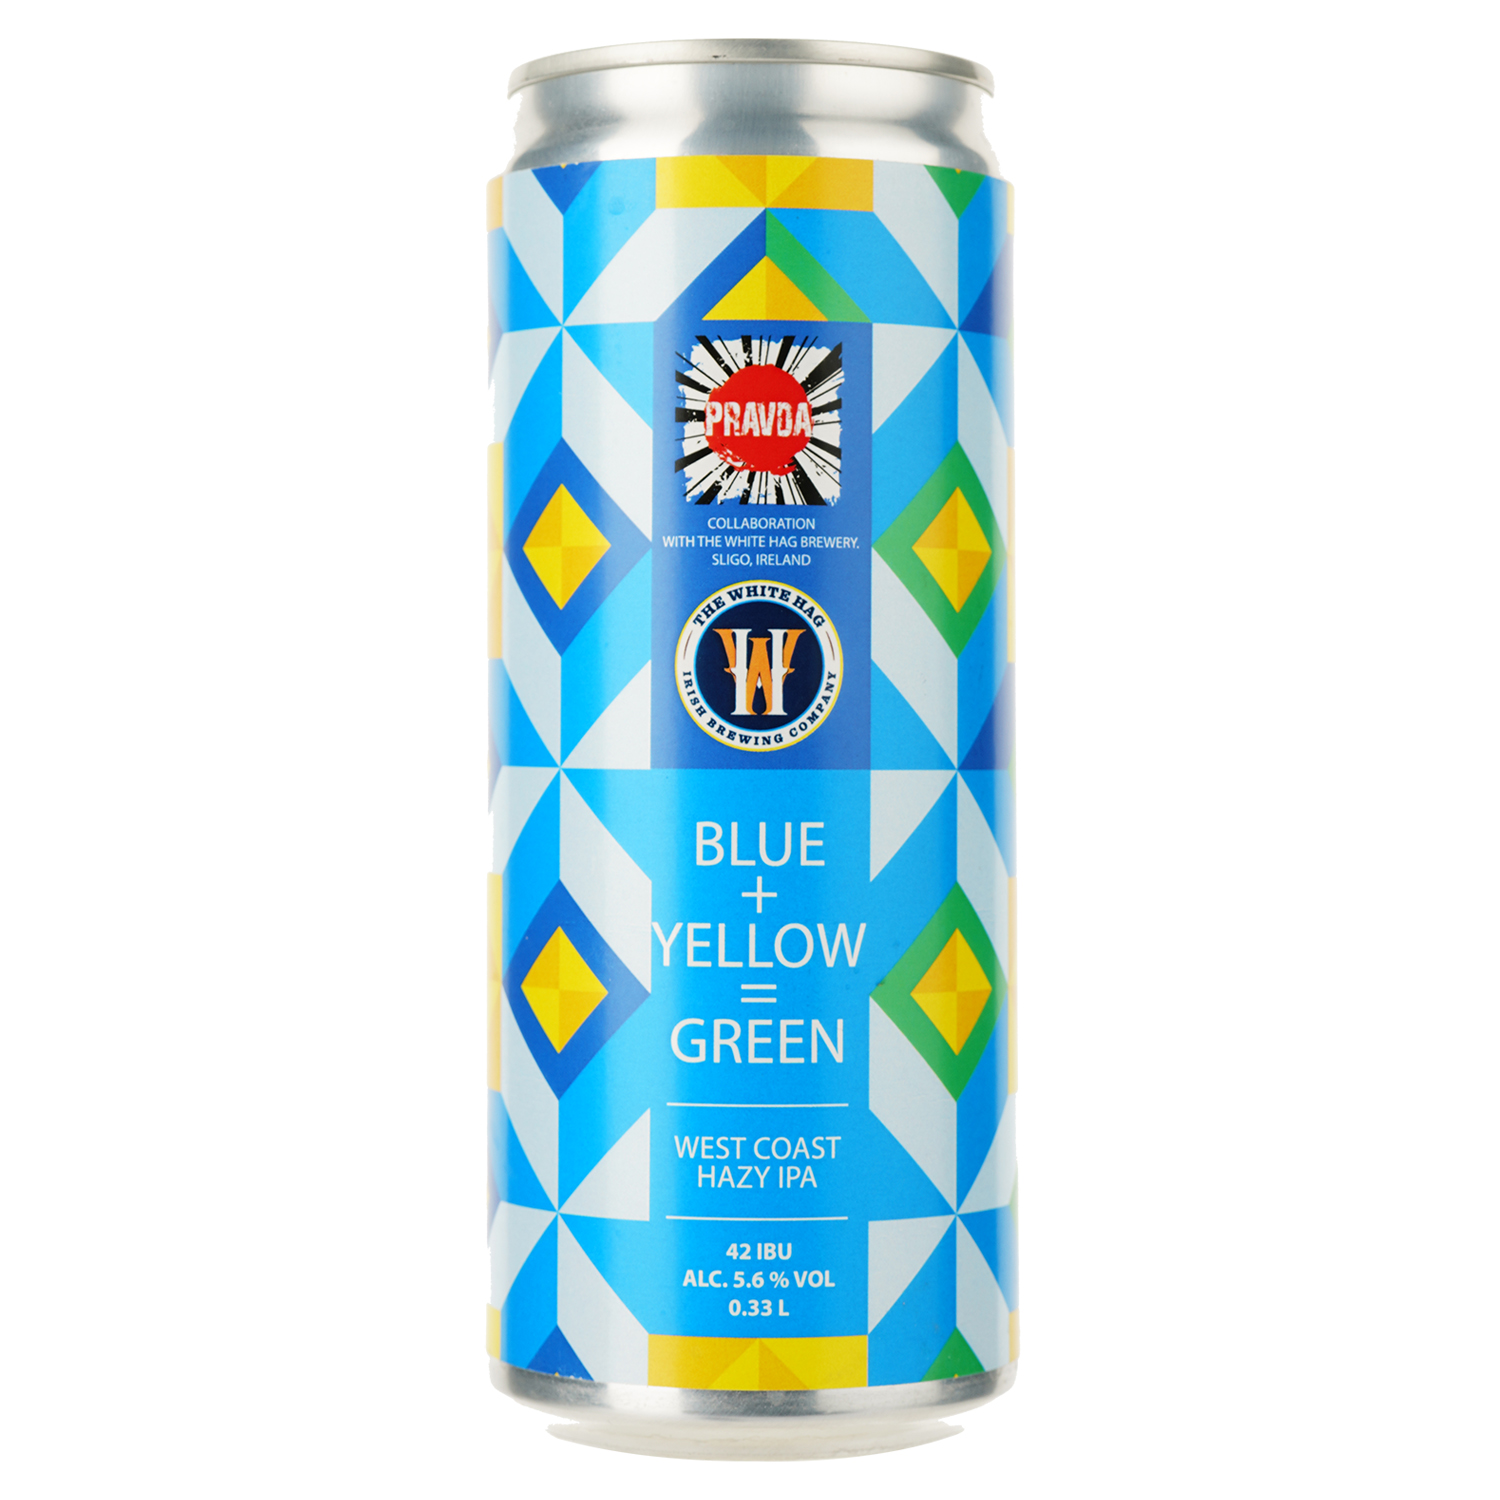 Пиво Правда Blue + Yellow = Green 5.6% з/б 0.33 л - фото 1